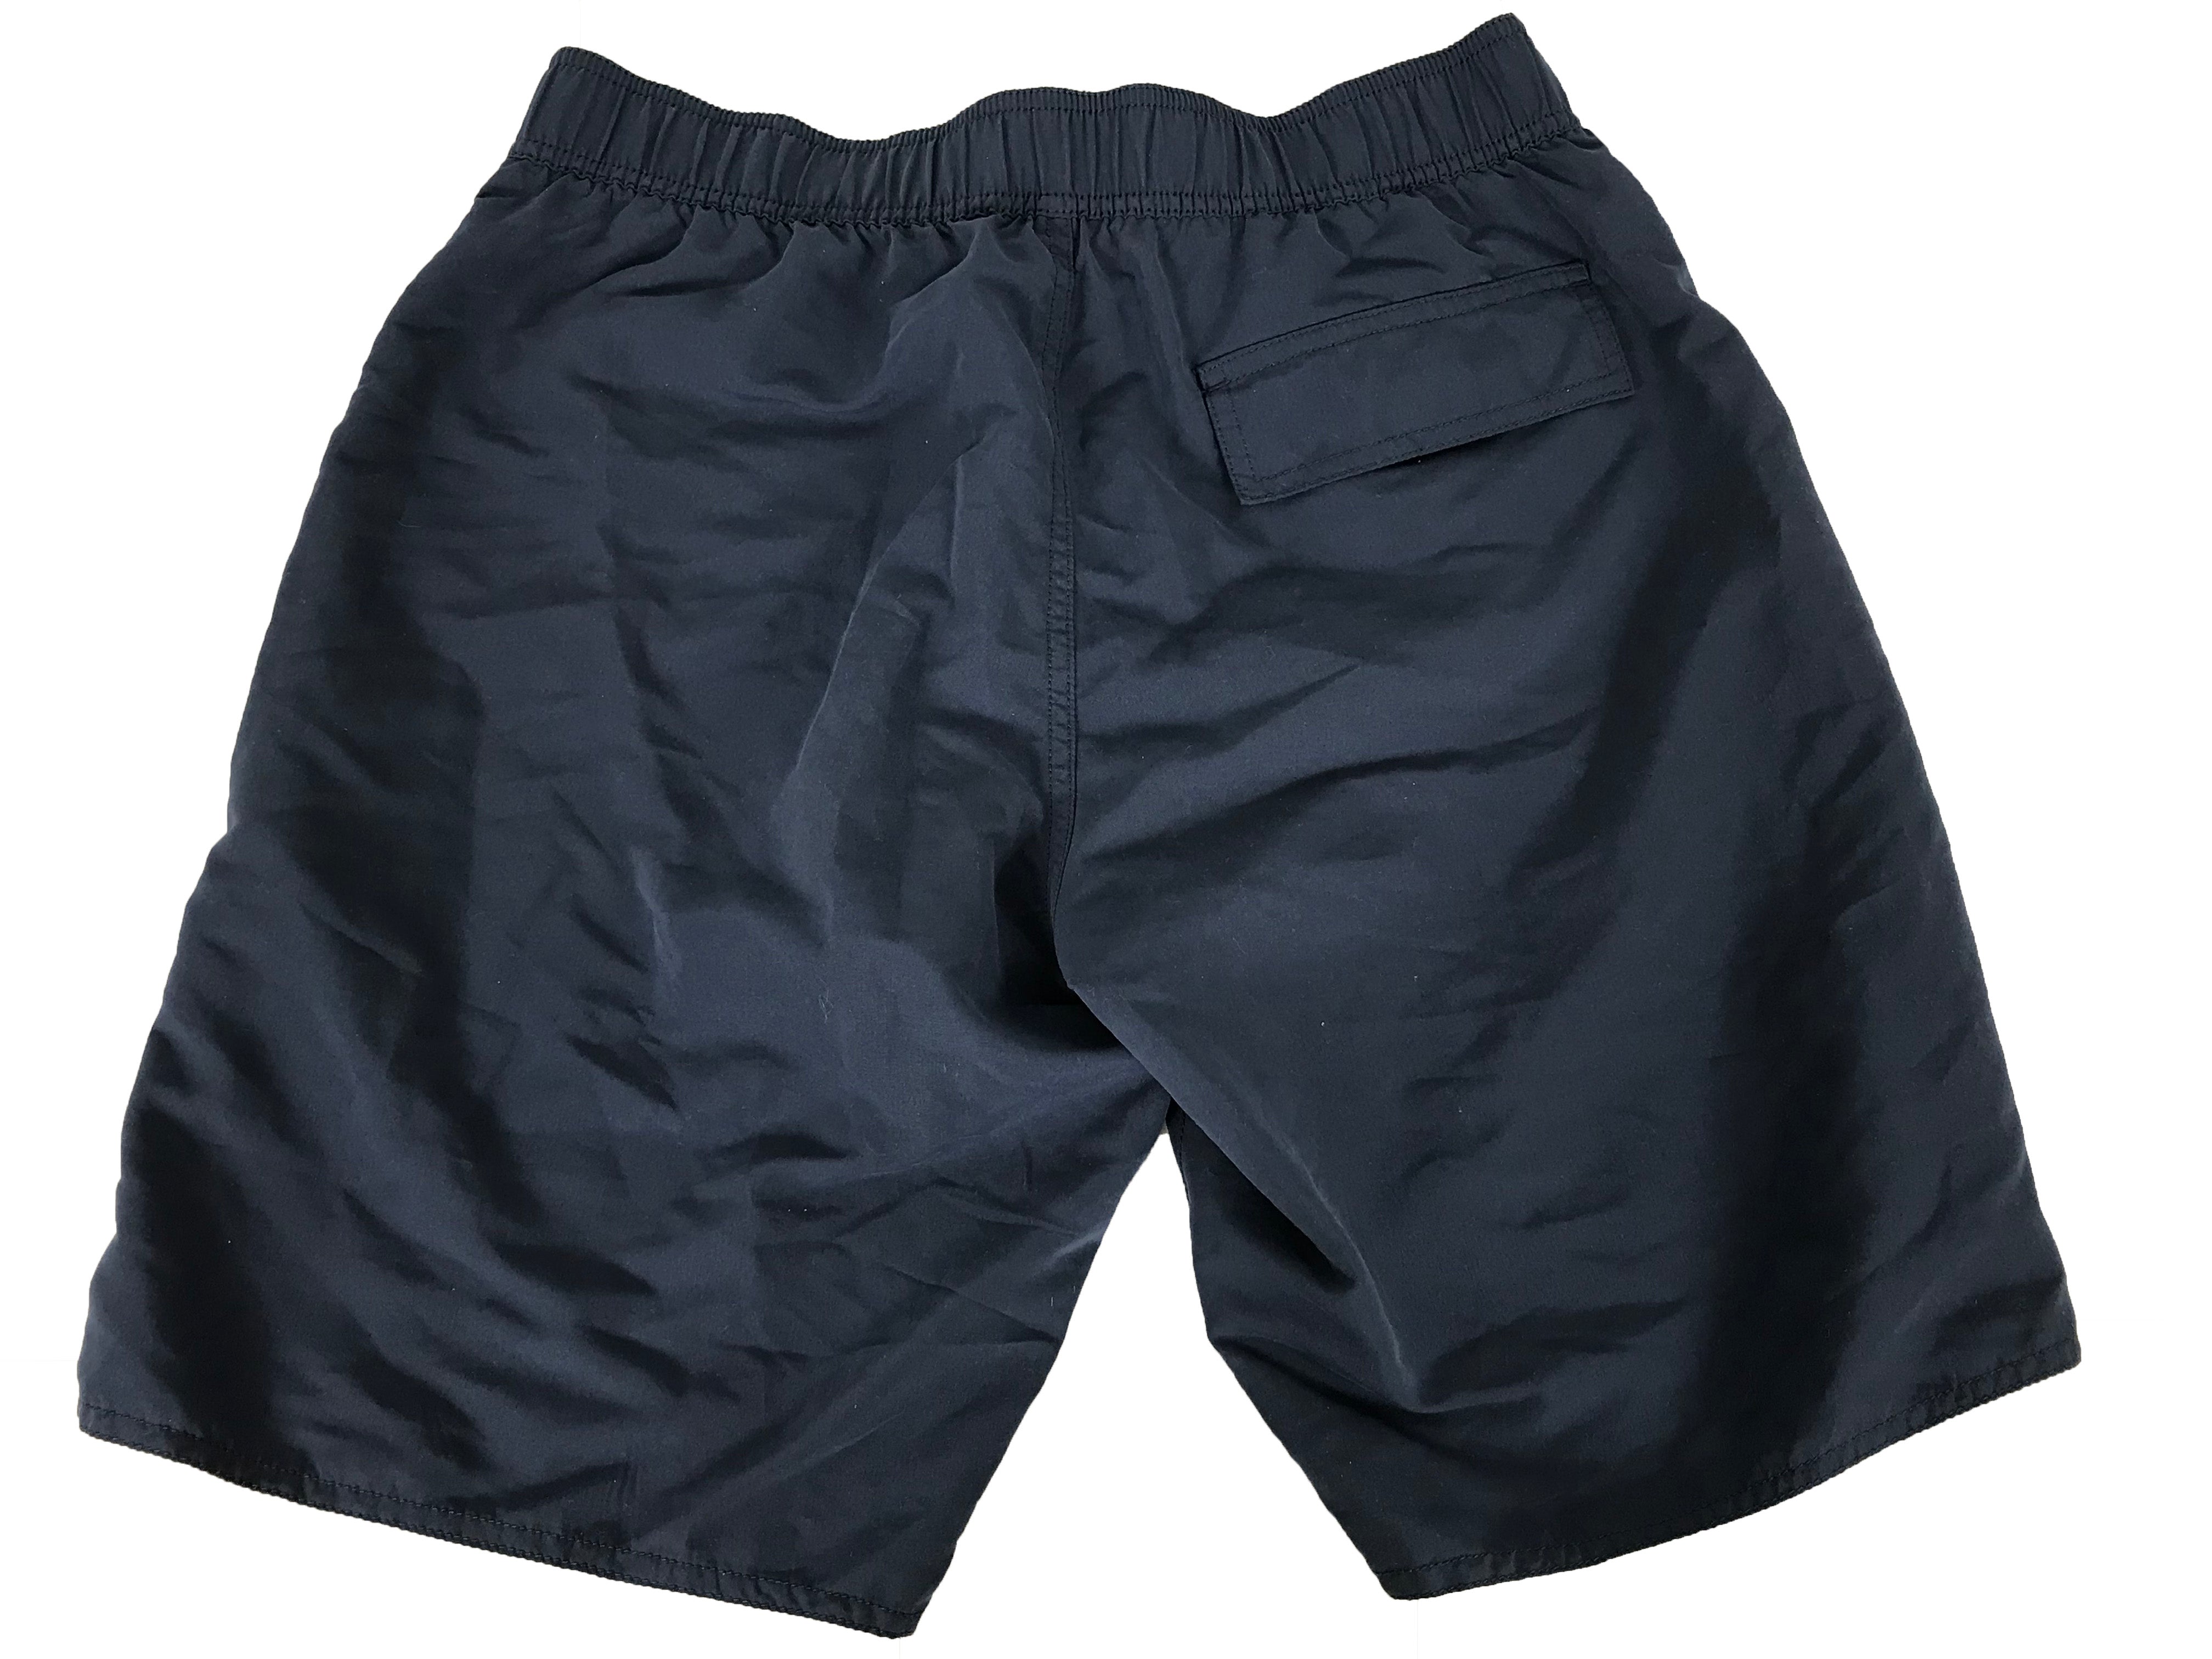 EA7 by Emporio Armani Navy Shorts Men's Size Medium